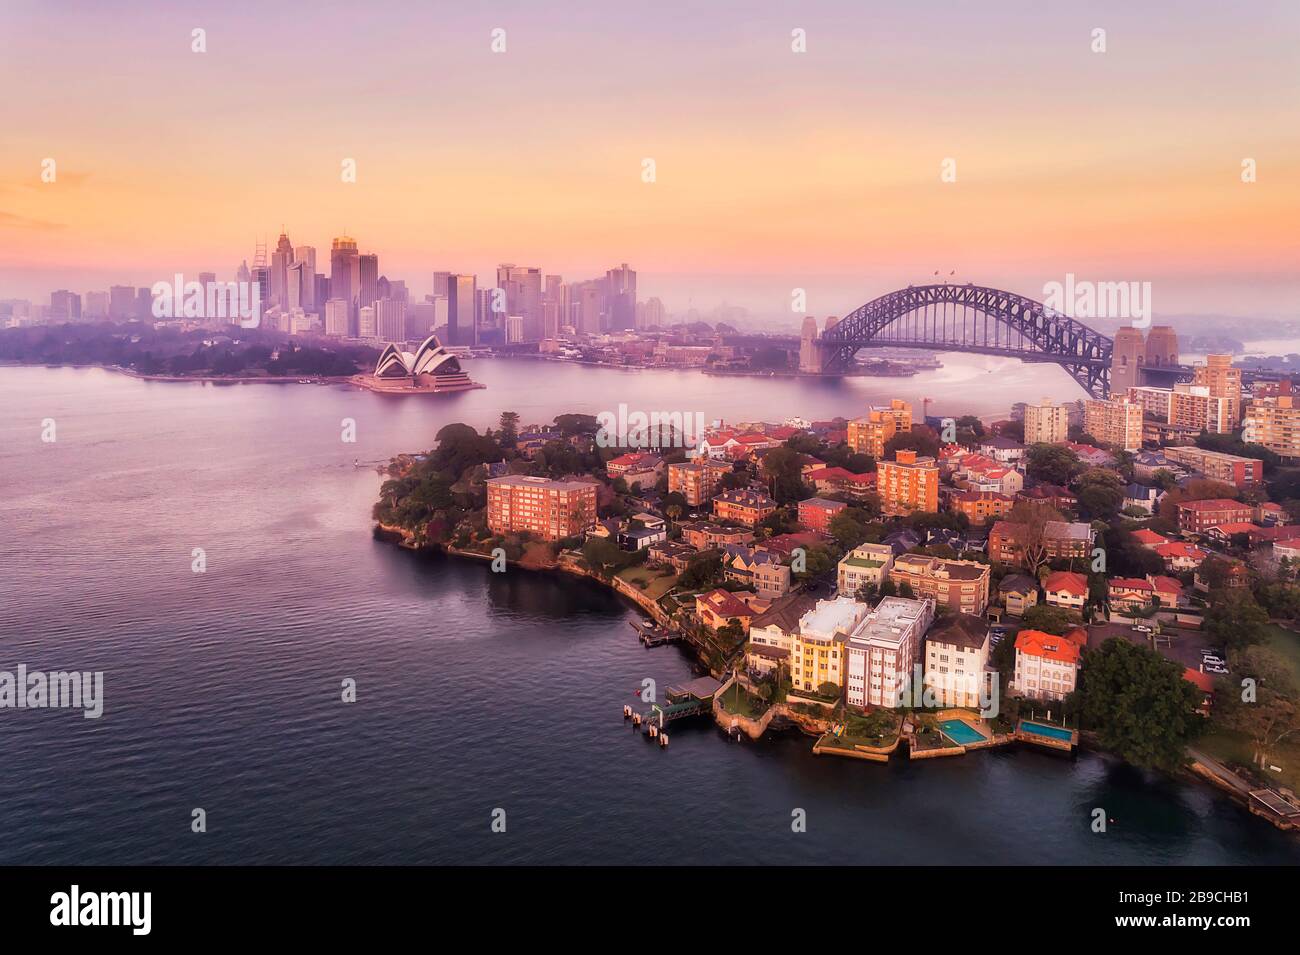 Hafen von Sydney und wichtige Wahrzeichen der Stadt am Wasser rund um die Sydney Harbour Bridge im Luftbild bei rosafarbenem Sonnenaufgang. Stockfoto